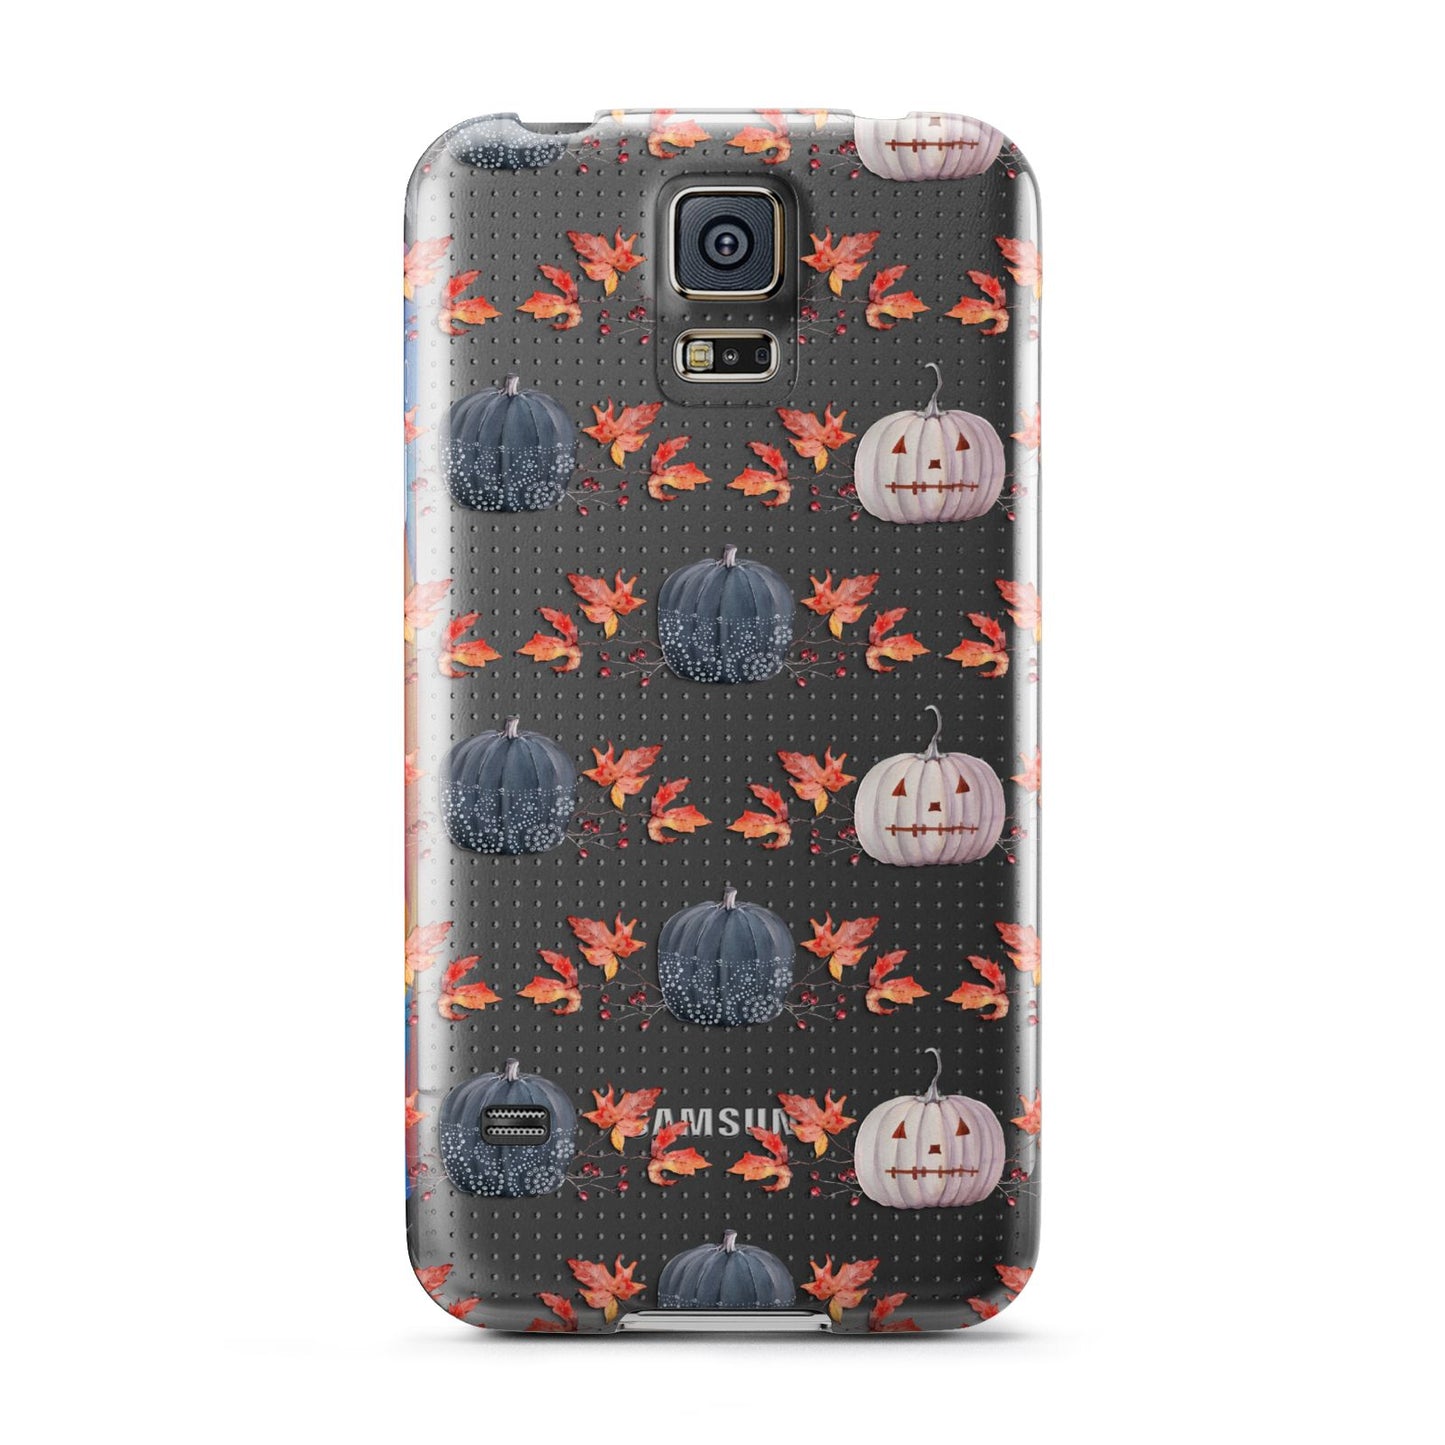 Pumpkin Autumn Leaves Samsung Galaxy S5 Case